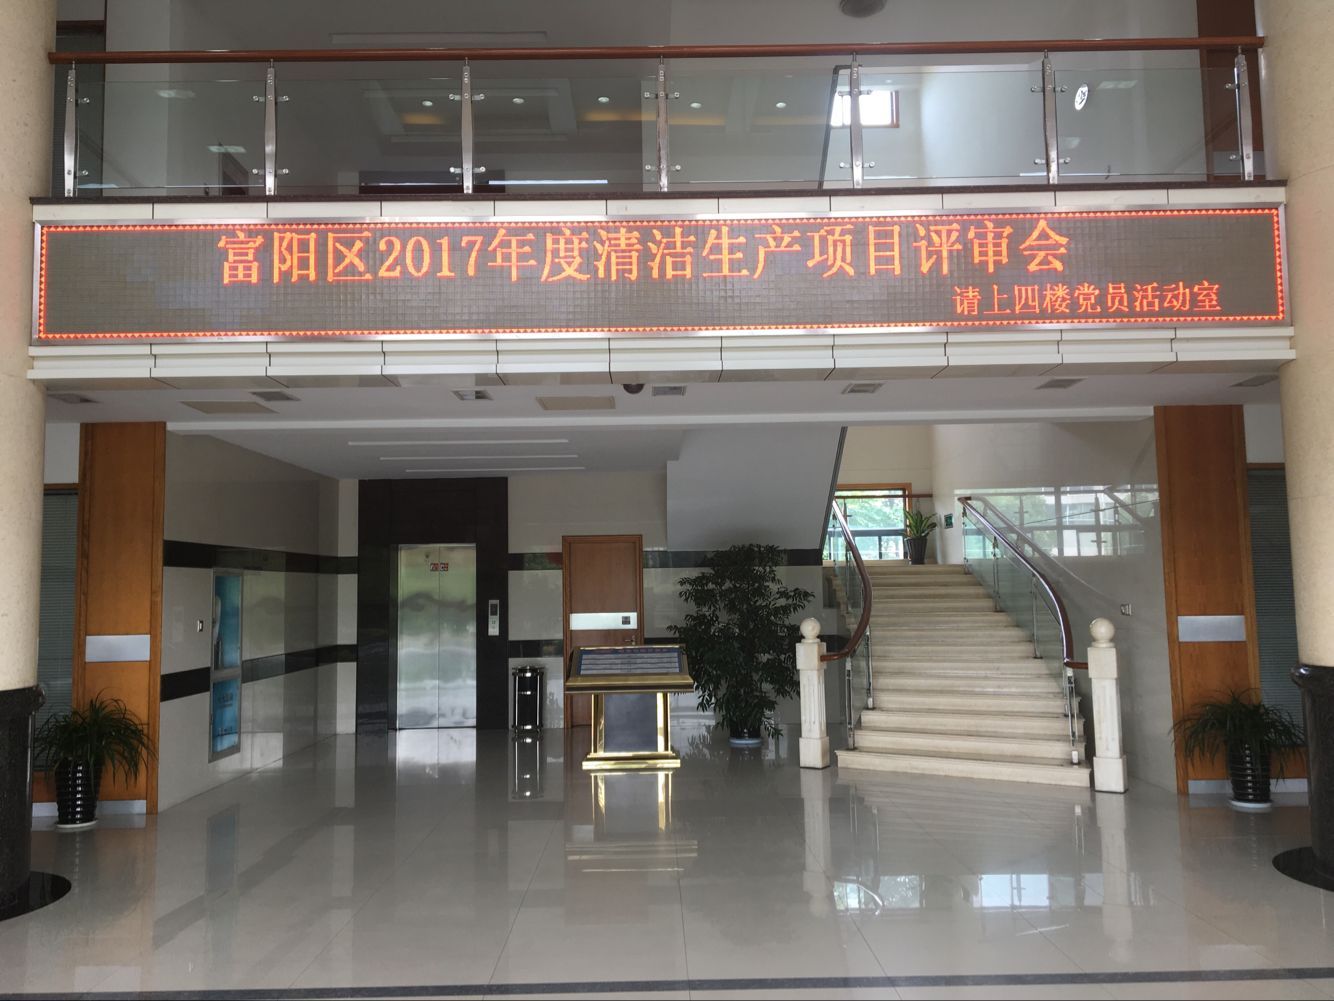 杭州富阳区企业清洁生产评审会议在鸿世电器顺利召开